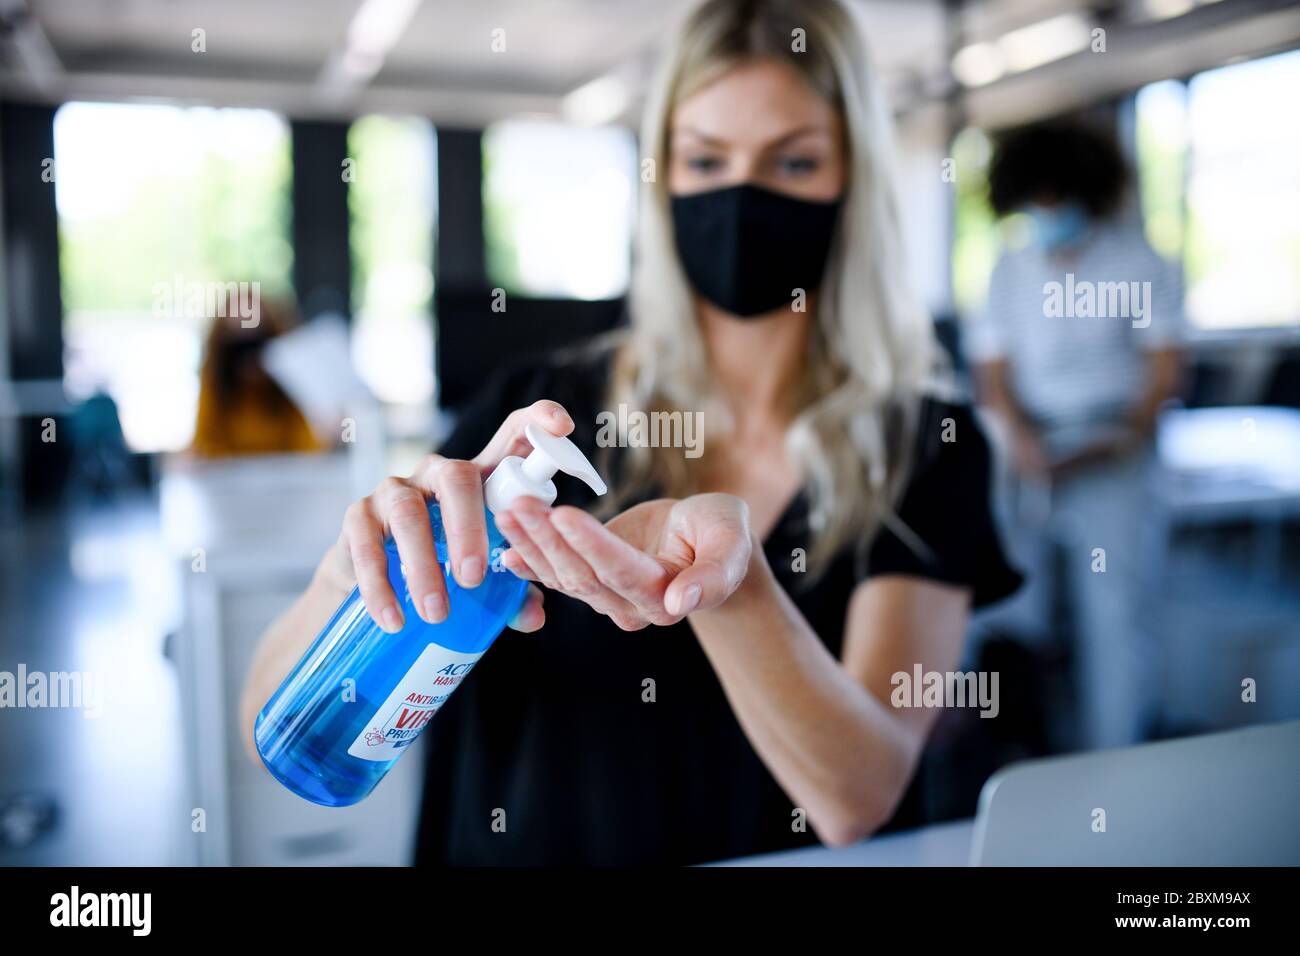 Junge Frau mit Gesichtsmaske zurück bei der Arbeit im Büro nach dem Lockdown, Desinfektion der Hände. Stockfoto